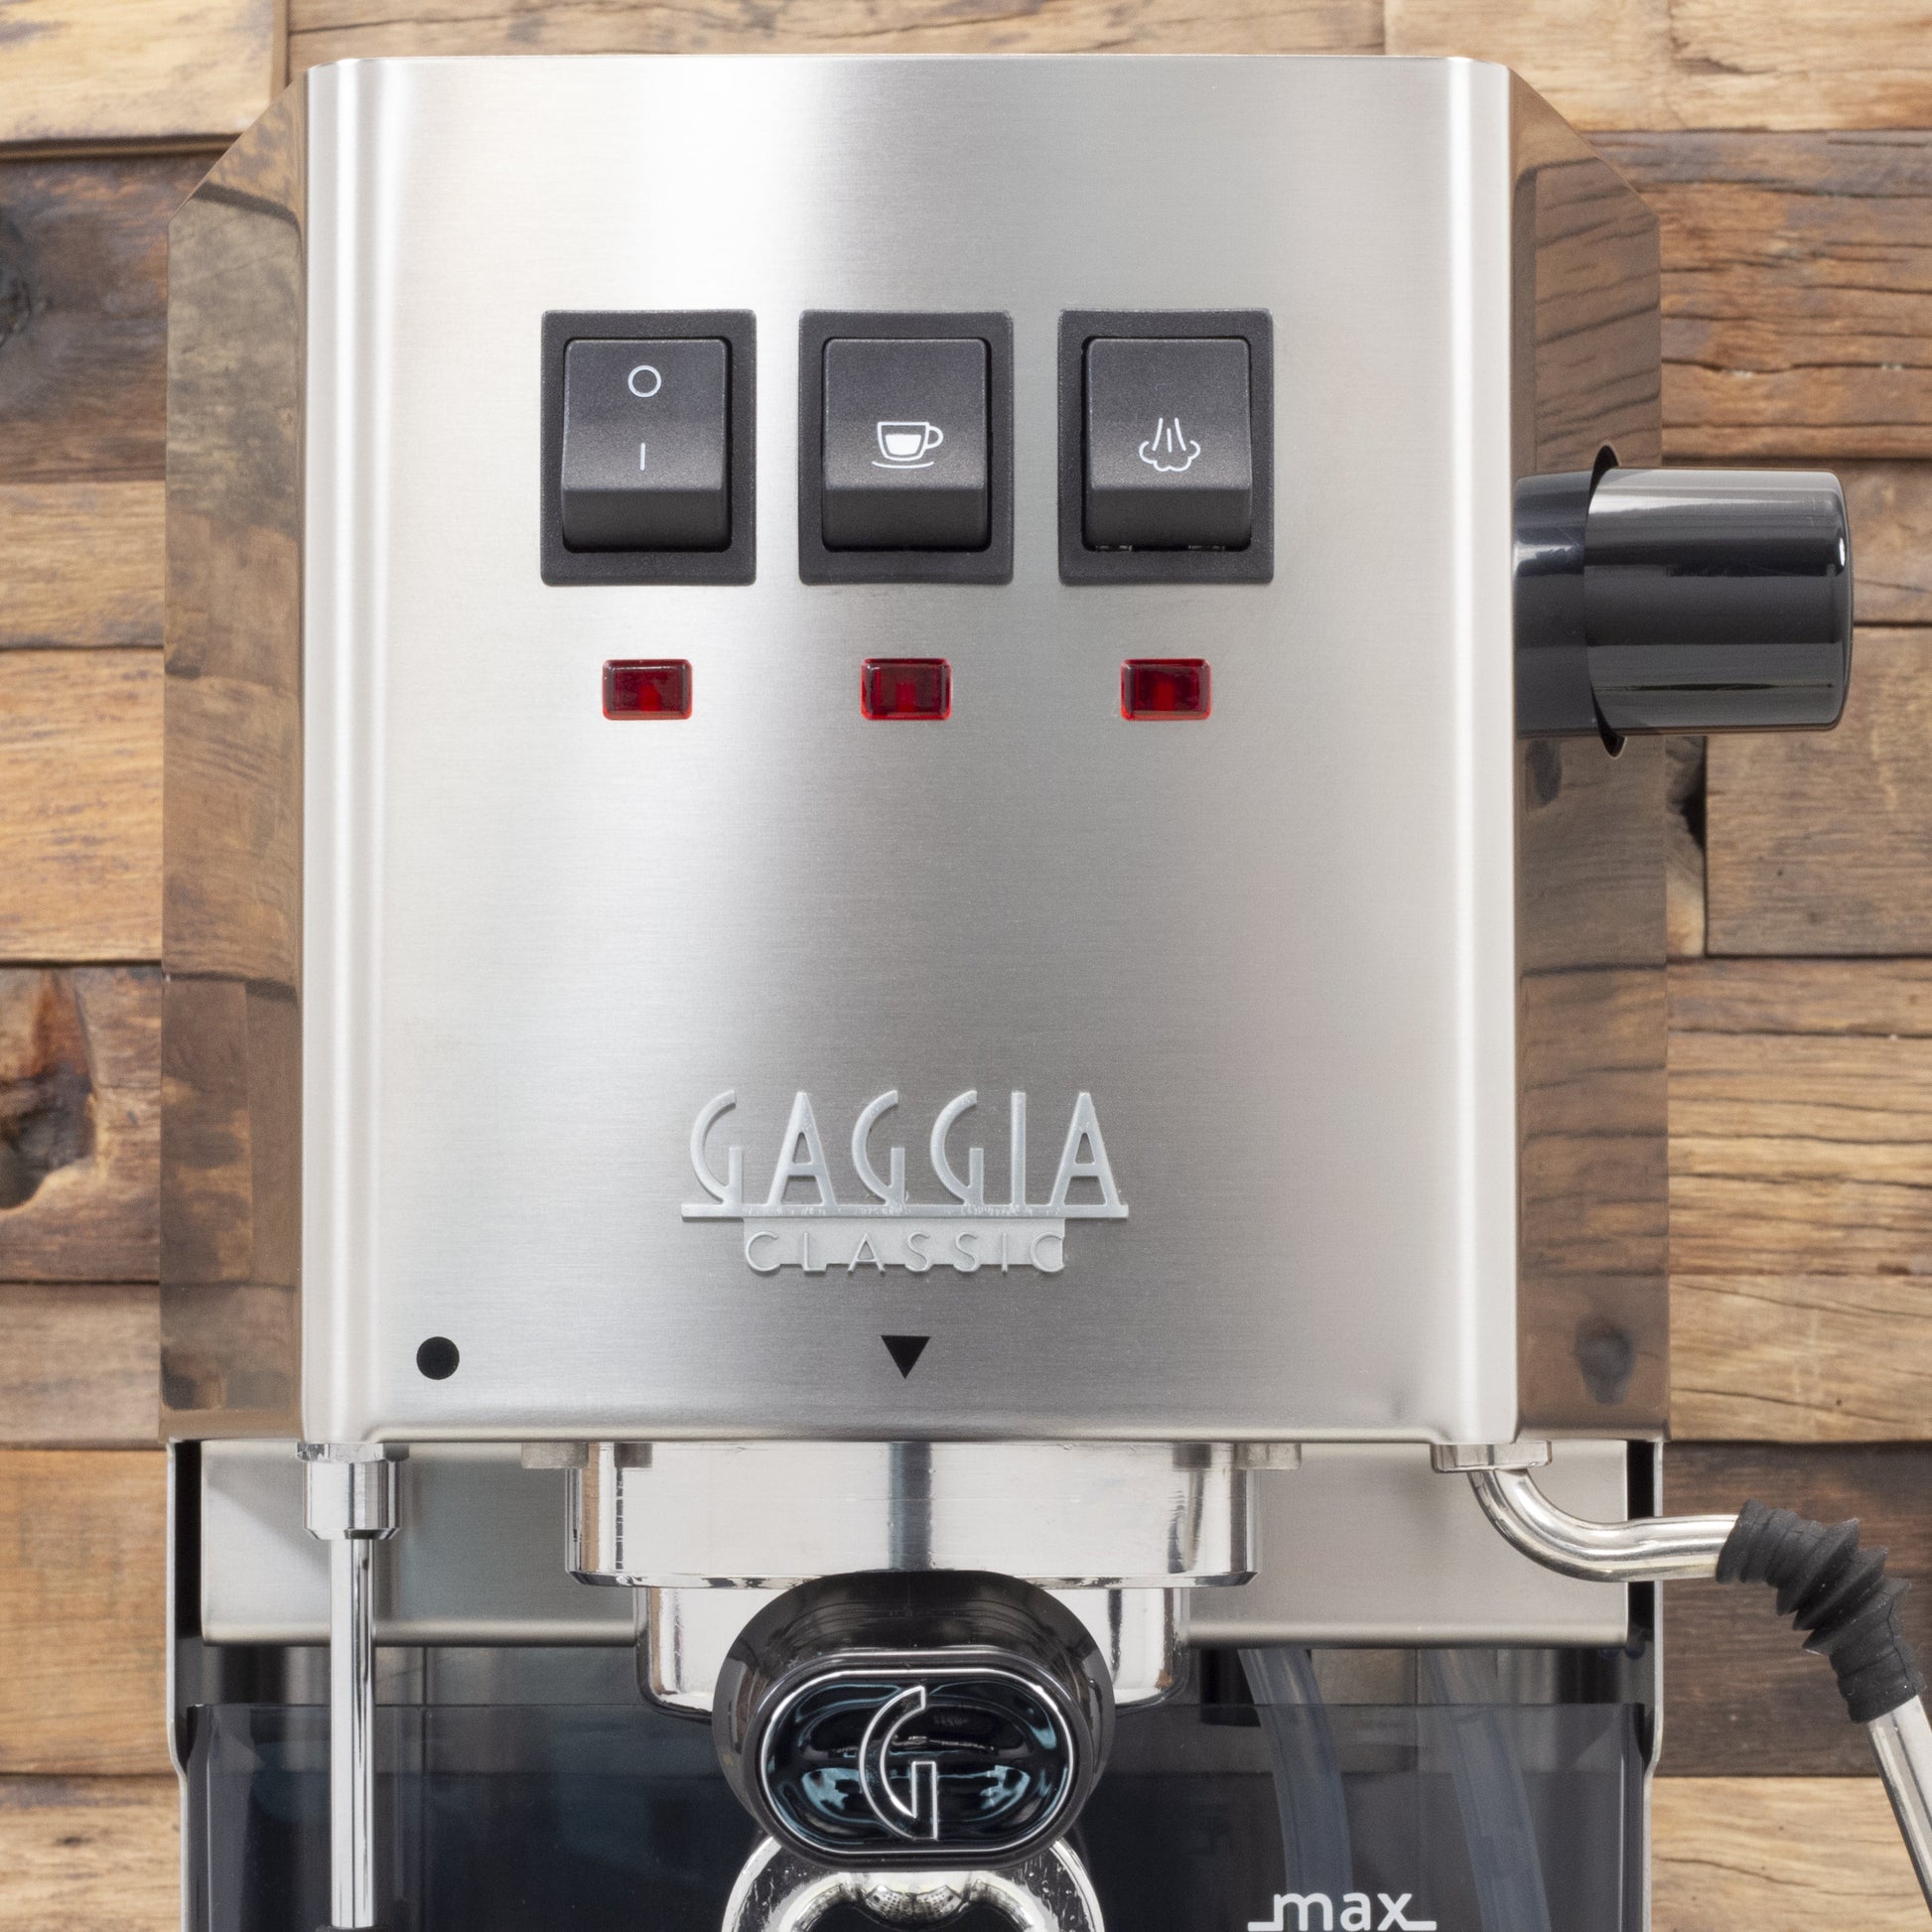 Gaggia Classic Evo Pro Espresso Machine in Sunshine Yellow – Whole Latte  Love